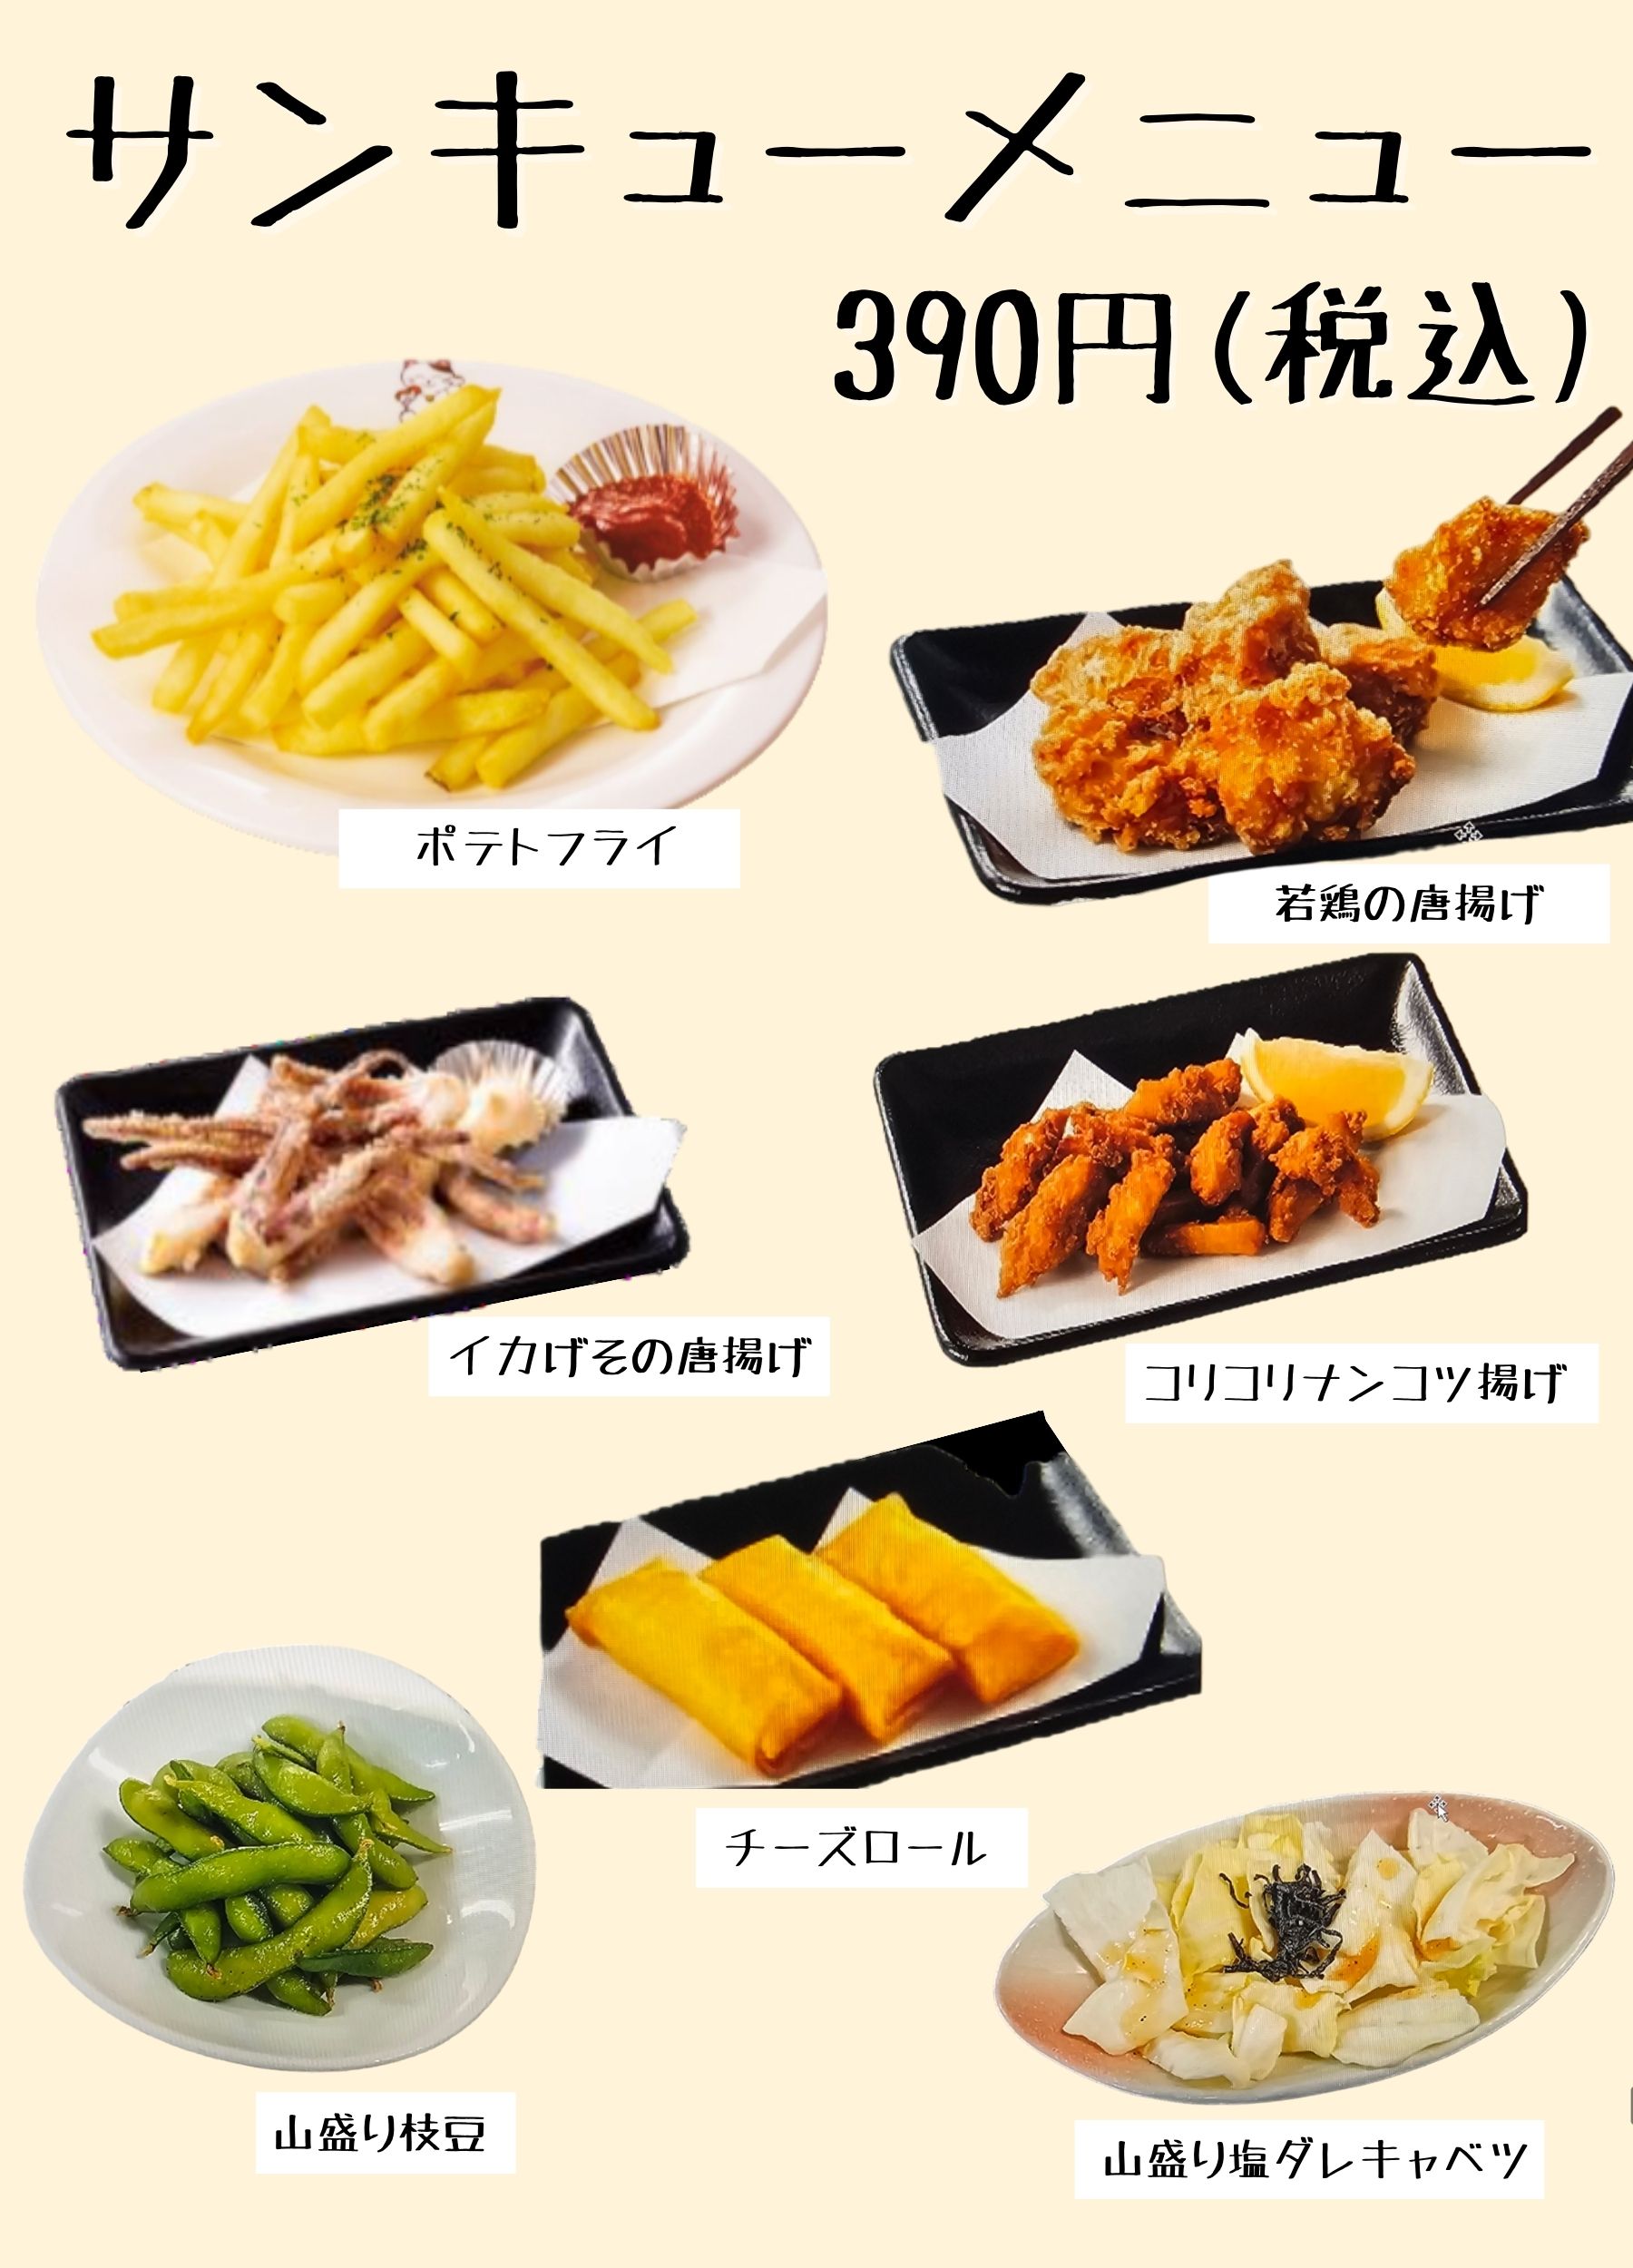 menu 02